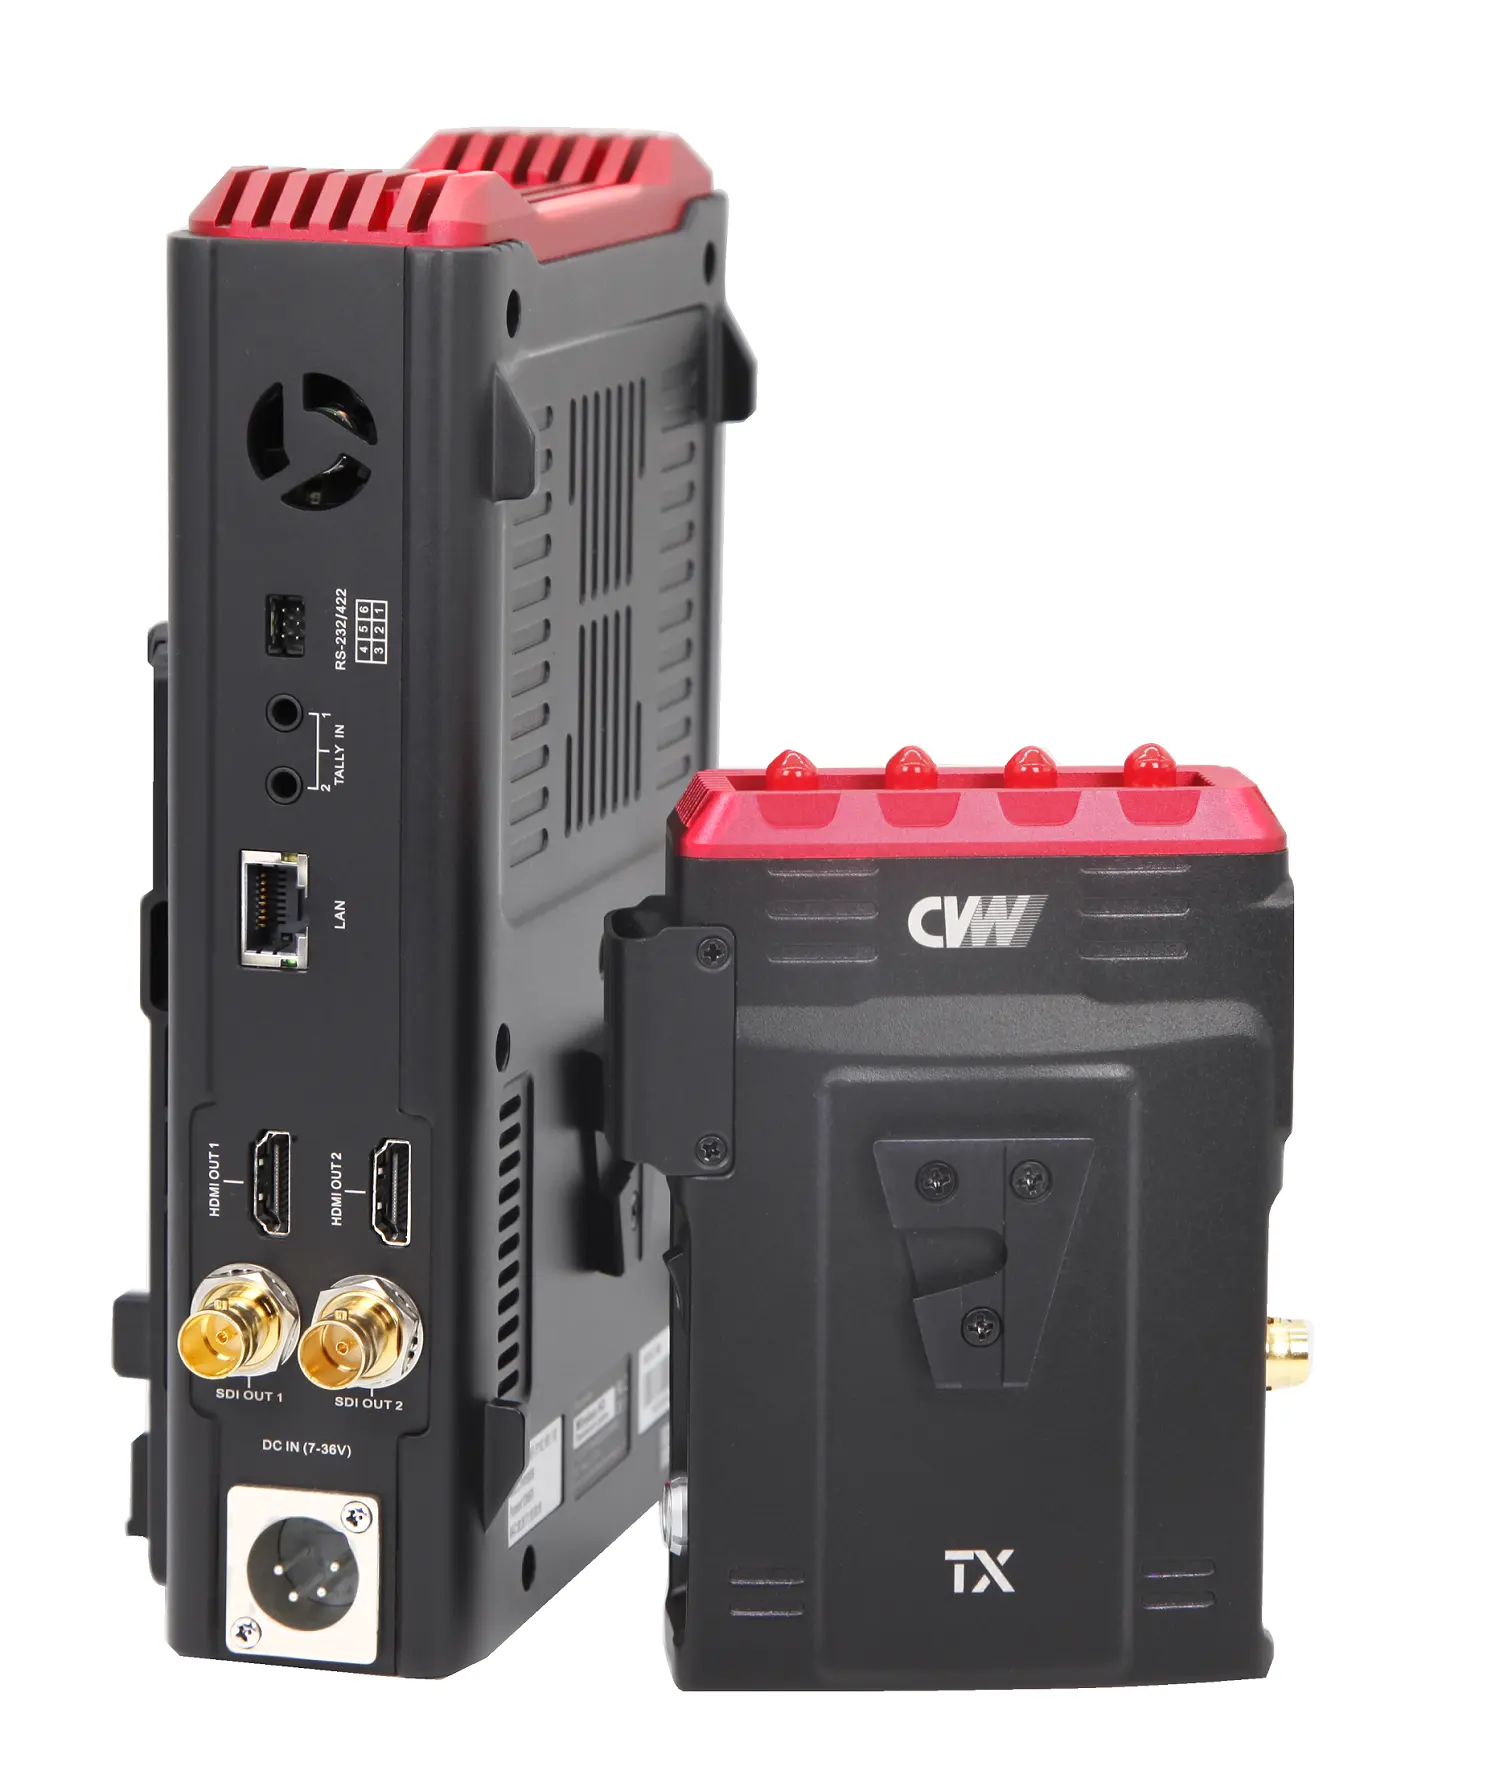 뜨거운 판매 CVW Beamlink Duo Plus 멀티 카메라 낮은 대기 시간 무선 비디오 송신기 및 라이브 스트리밍 스포츠 게임 수신기